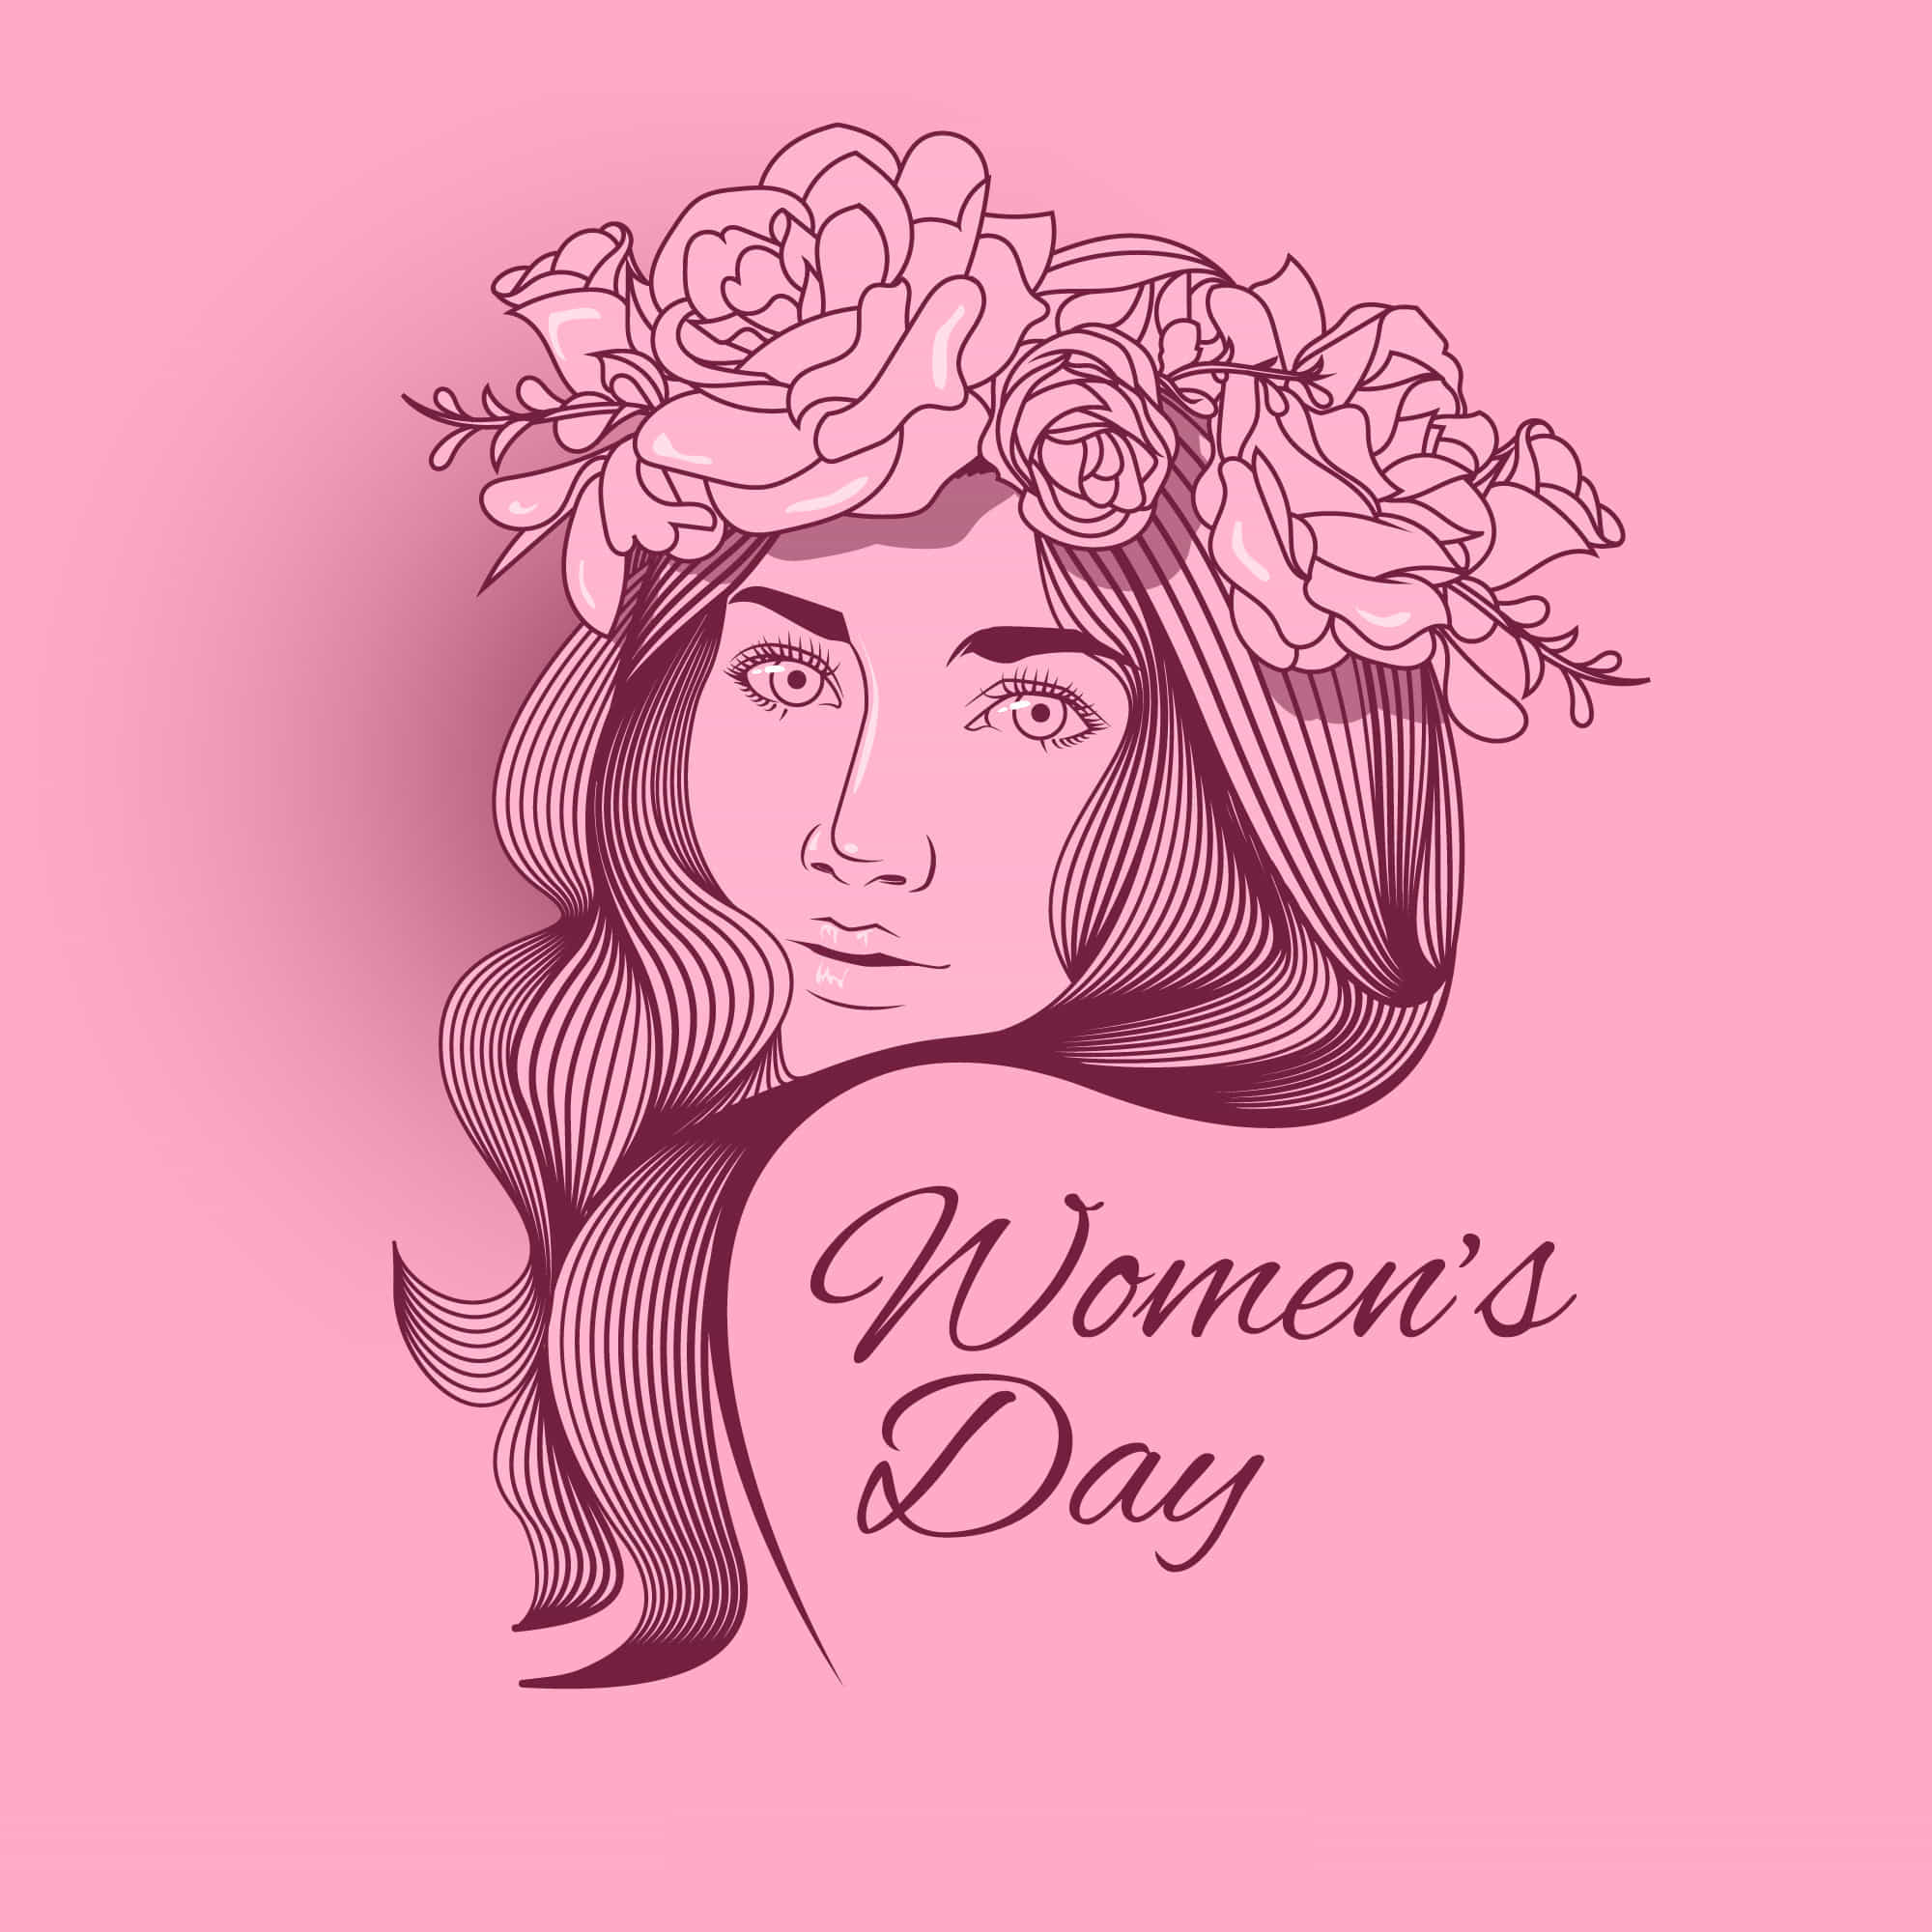 Happy Women's Day wallpaper Download